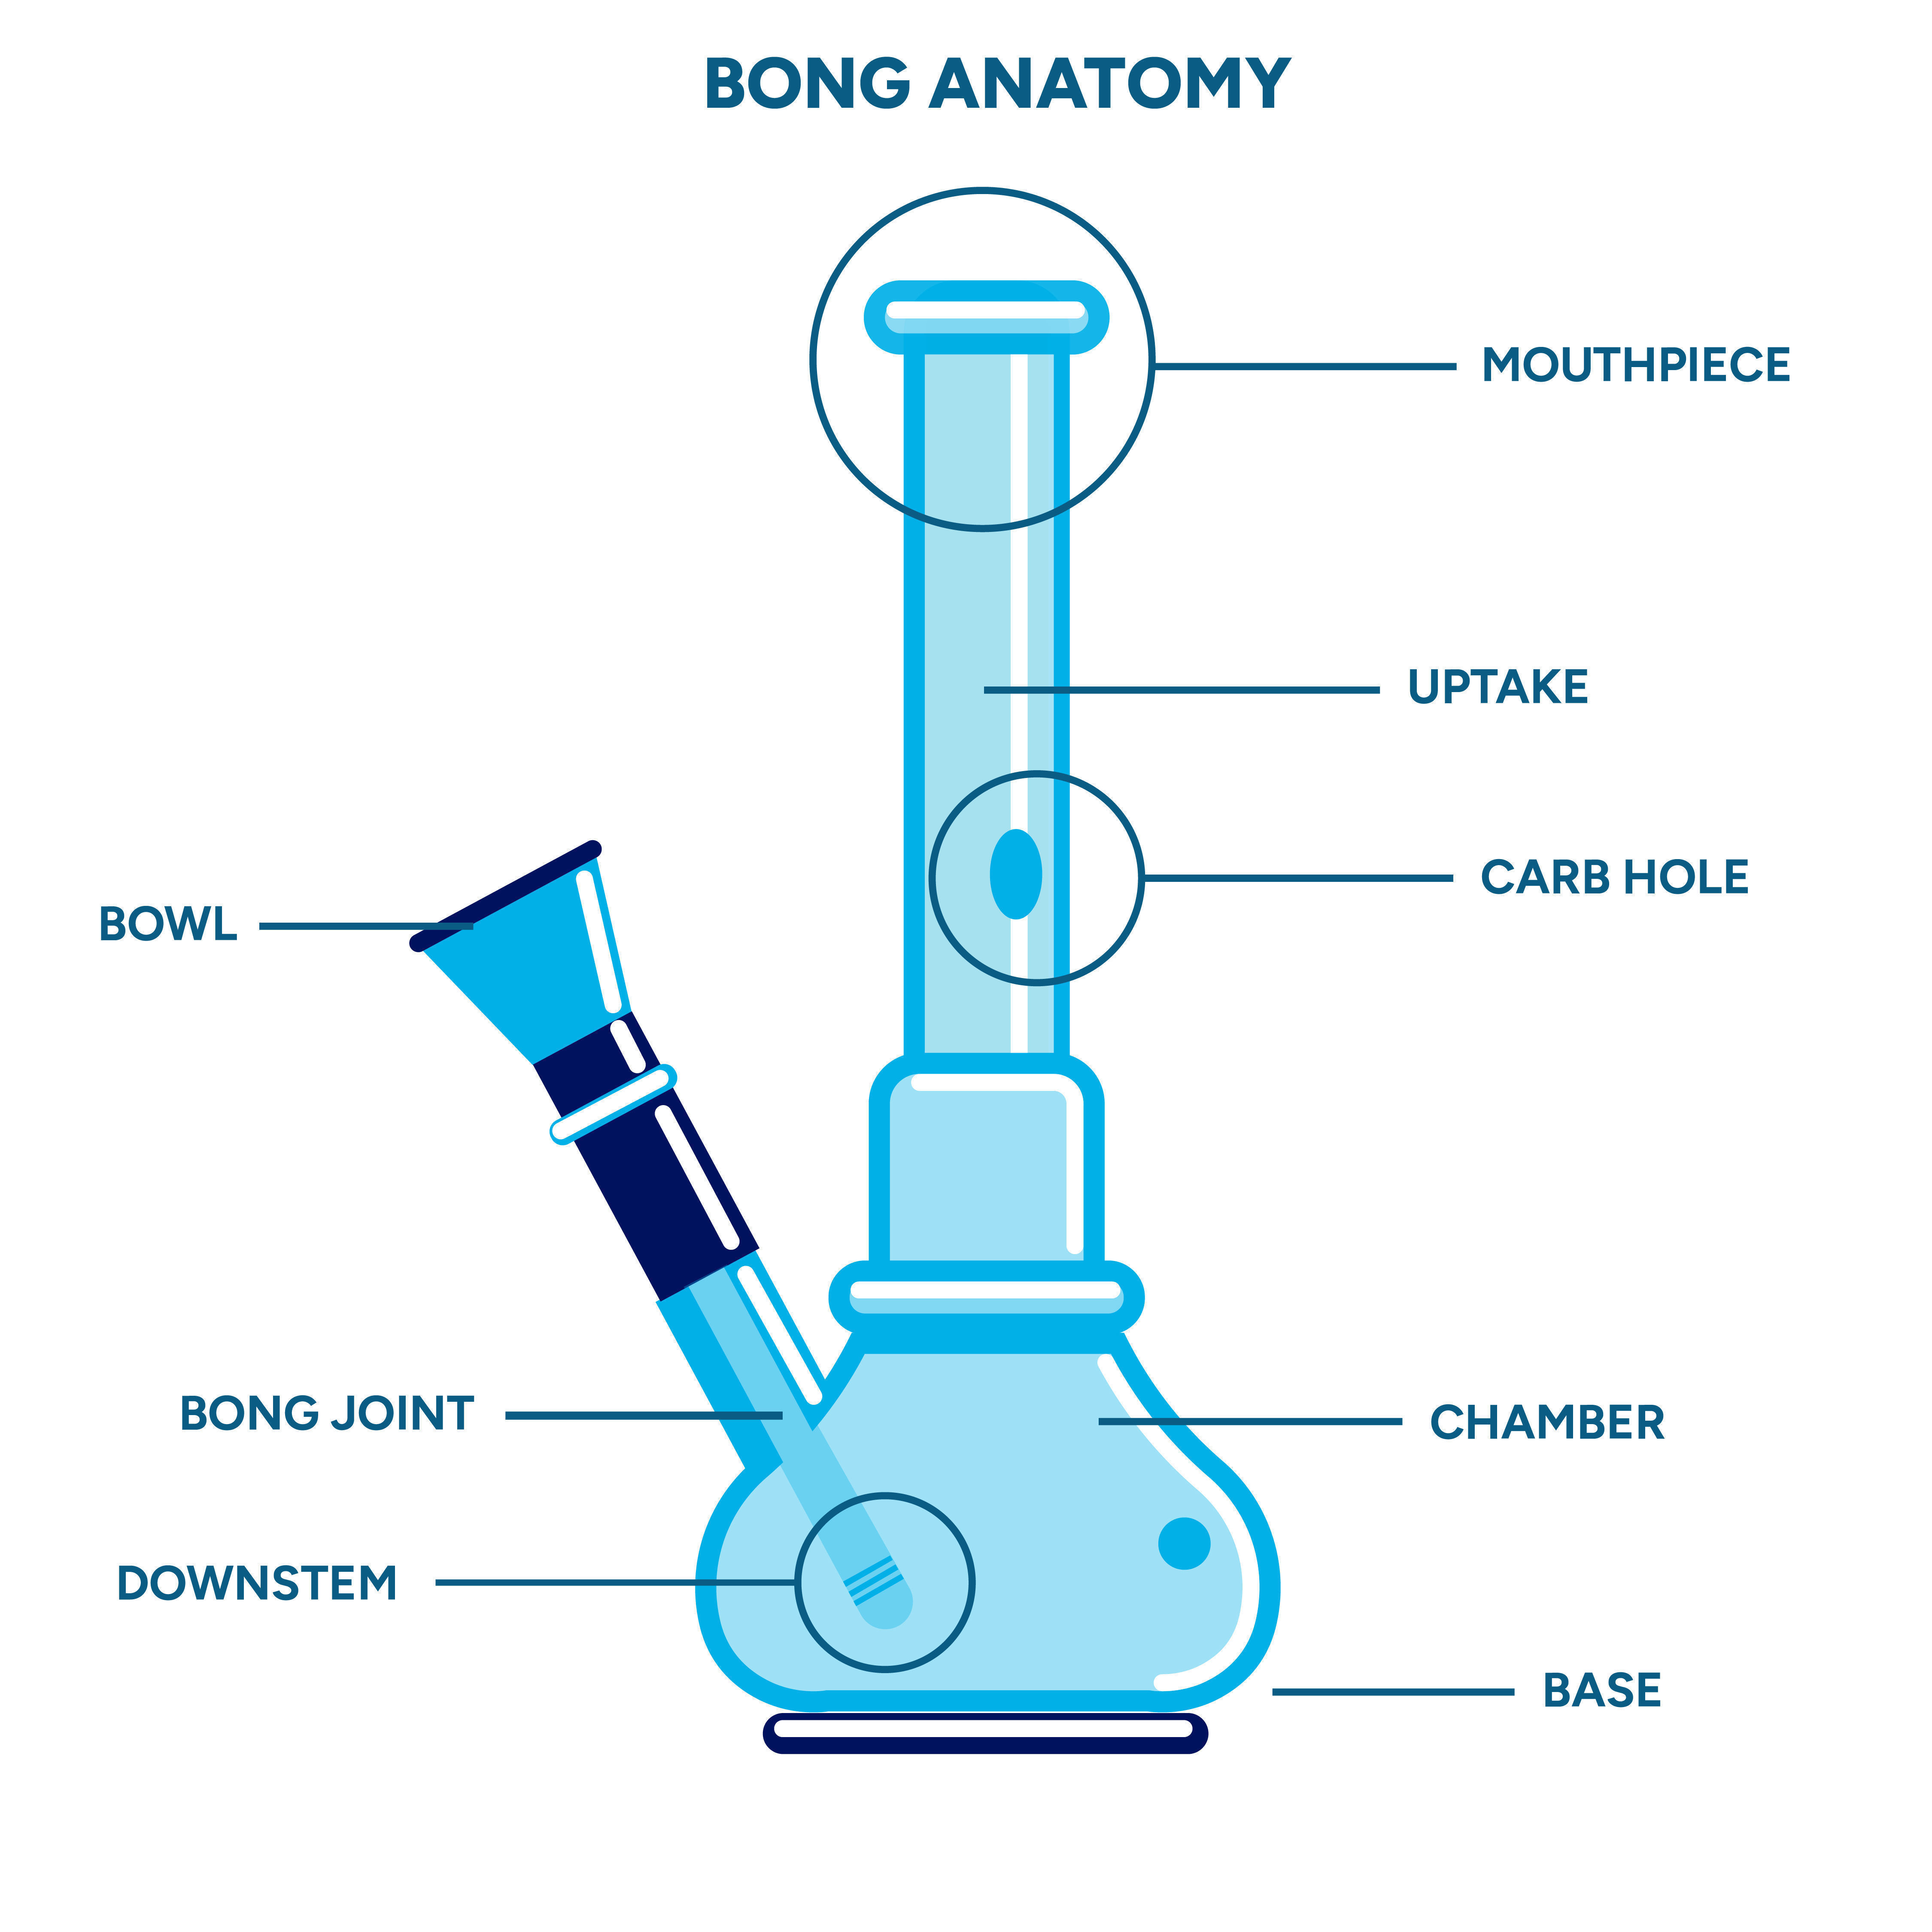 Anatomie einer Bong